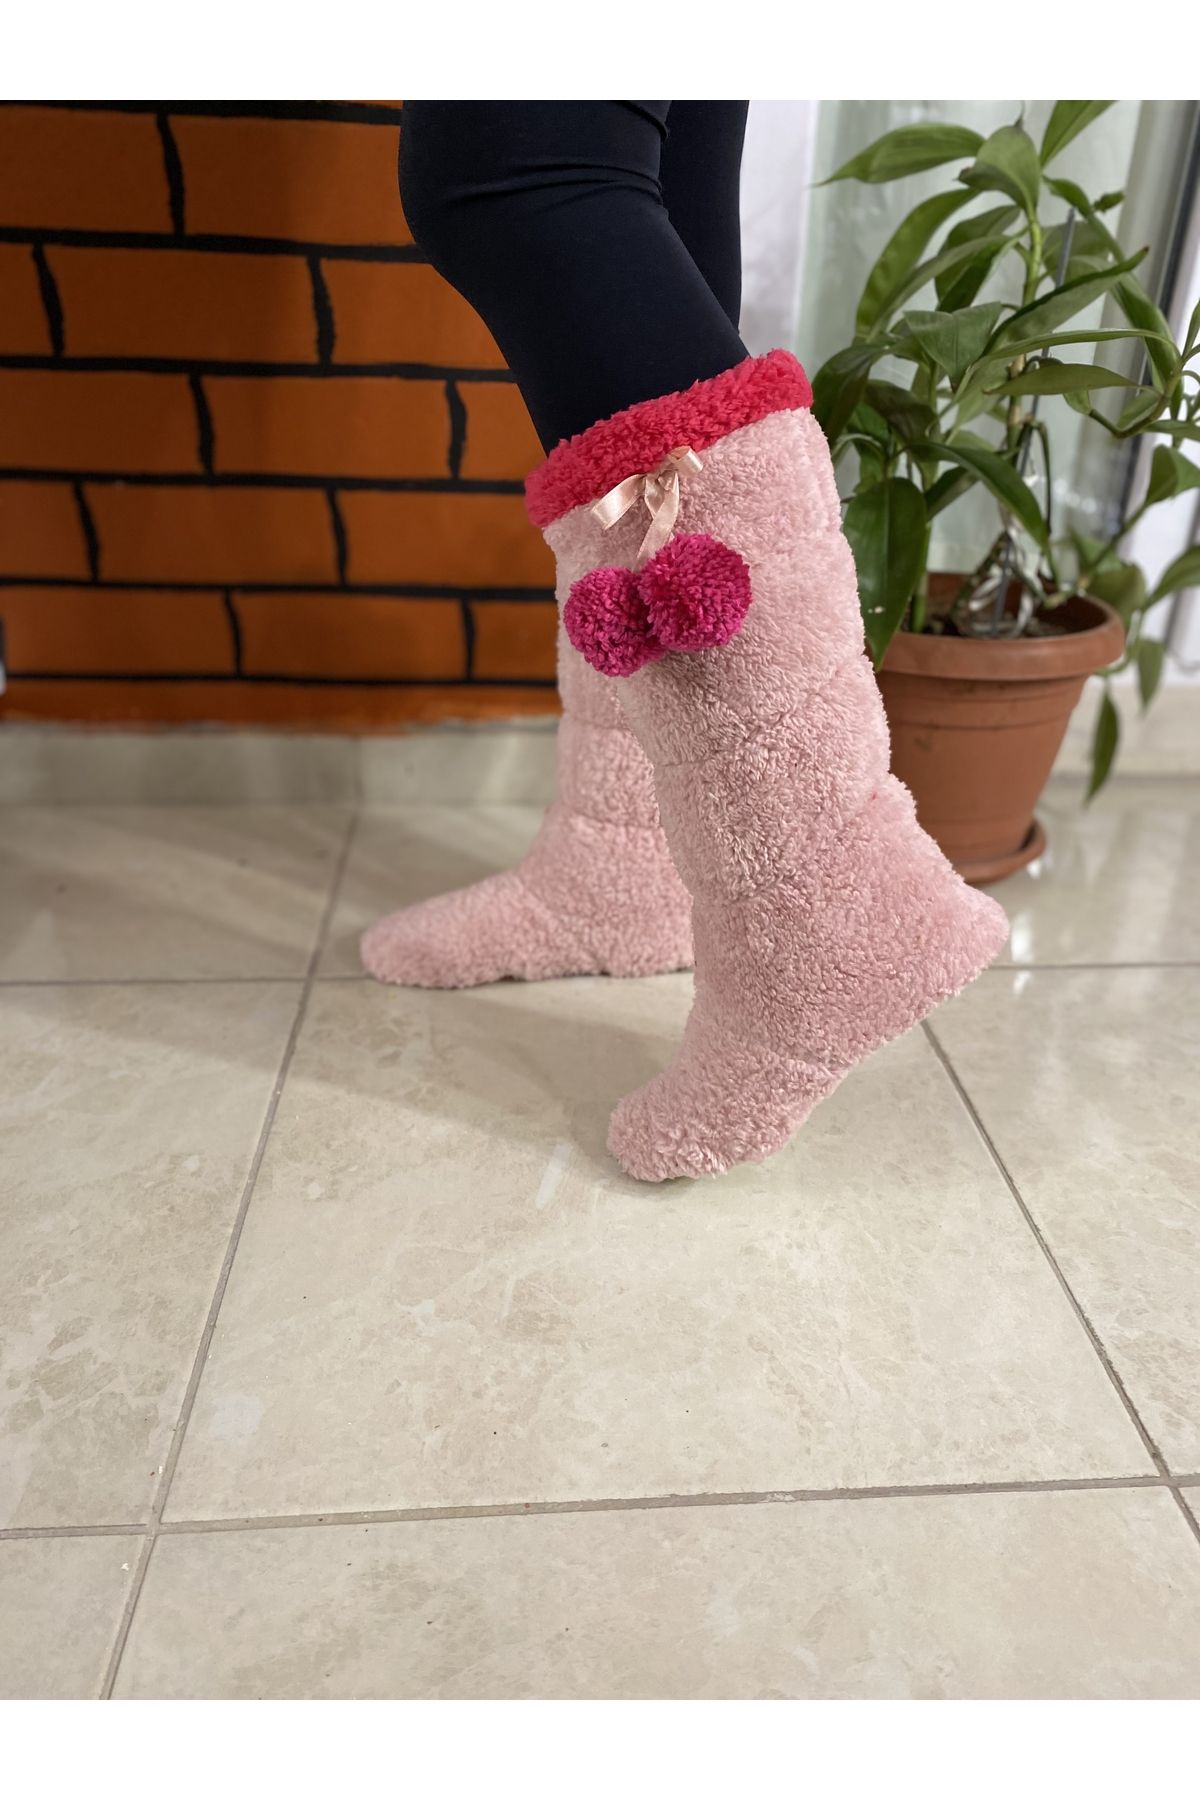 Pink Fluffy Slipper Socks